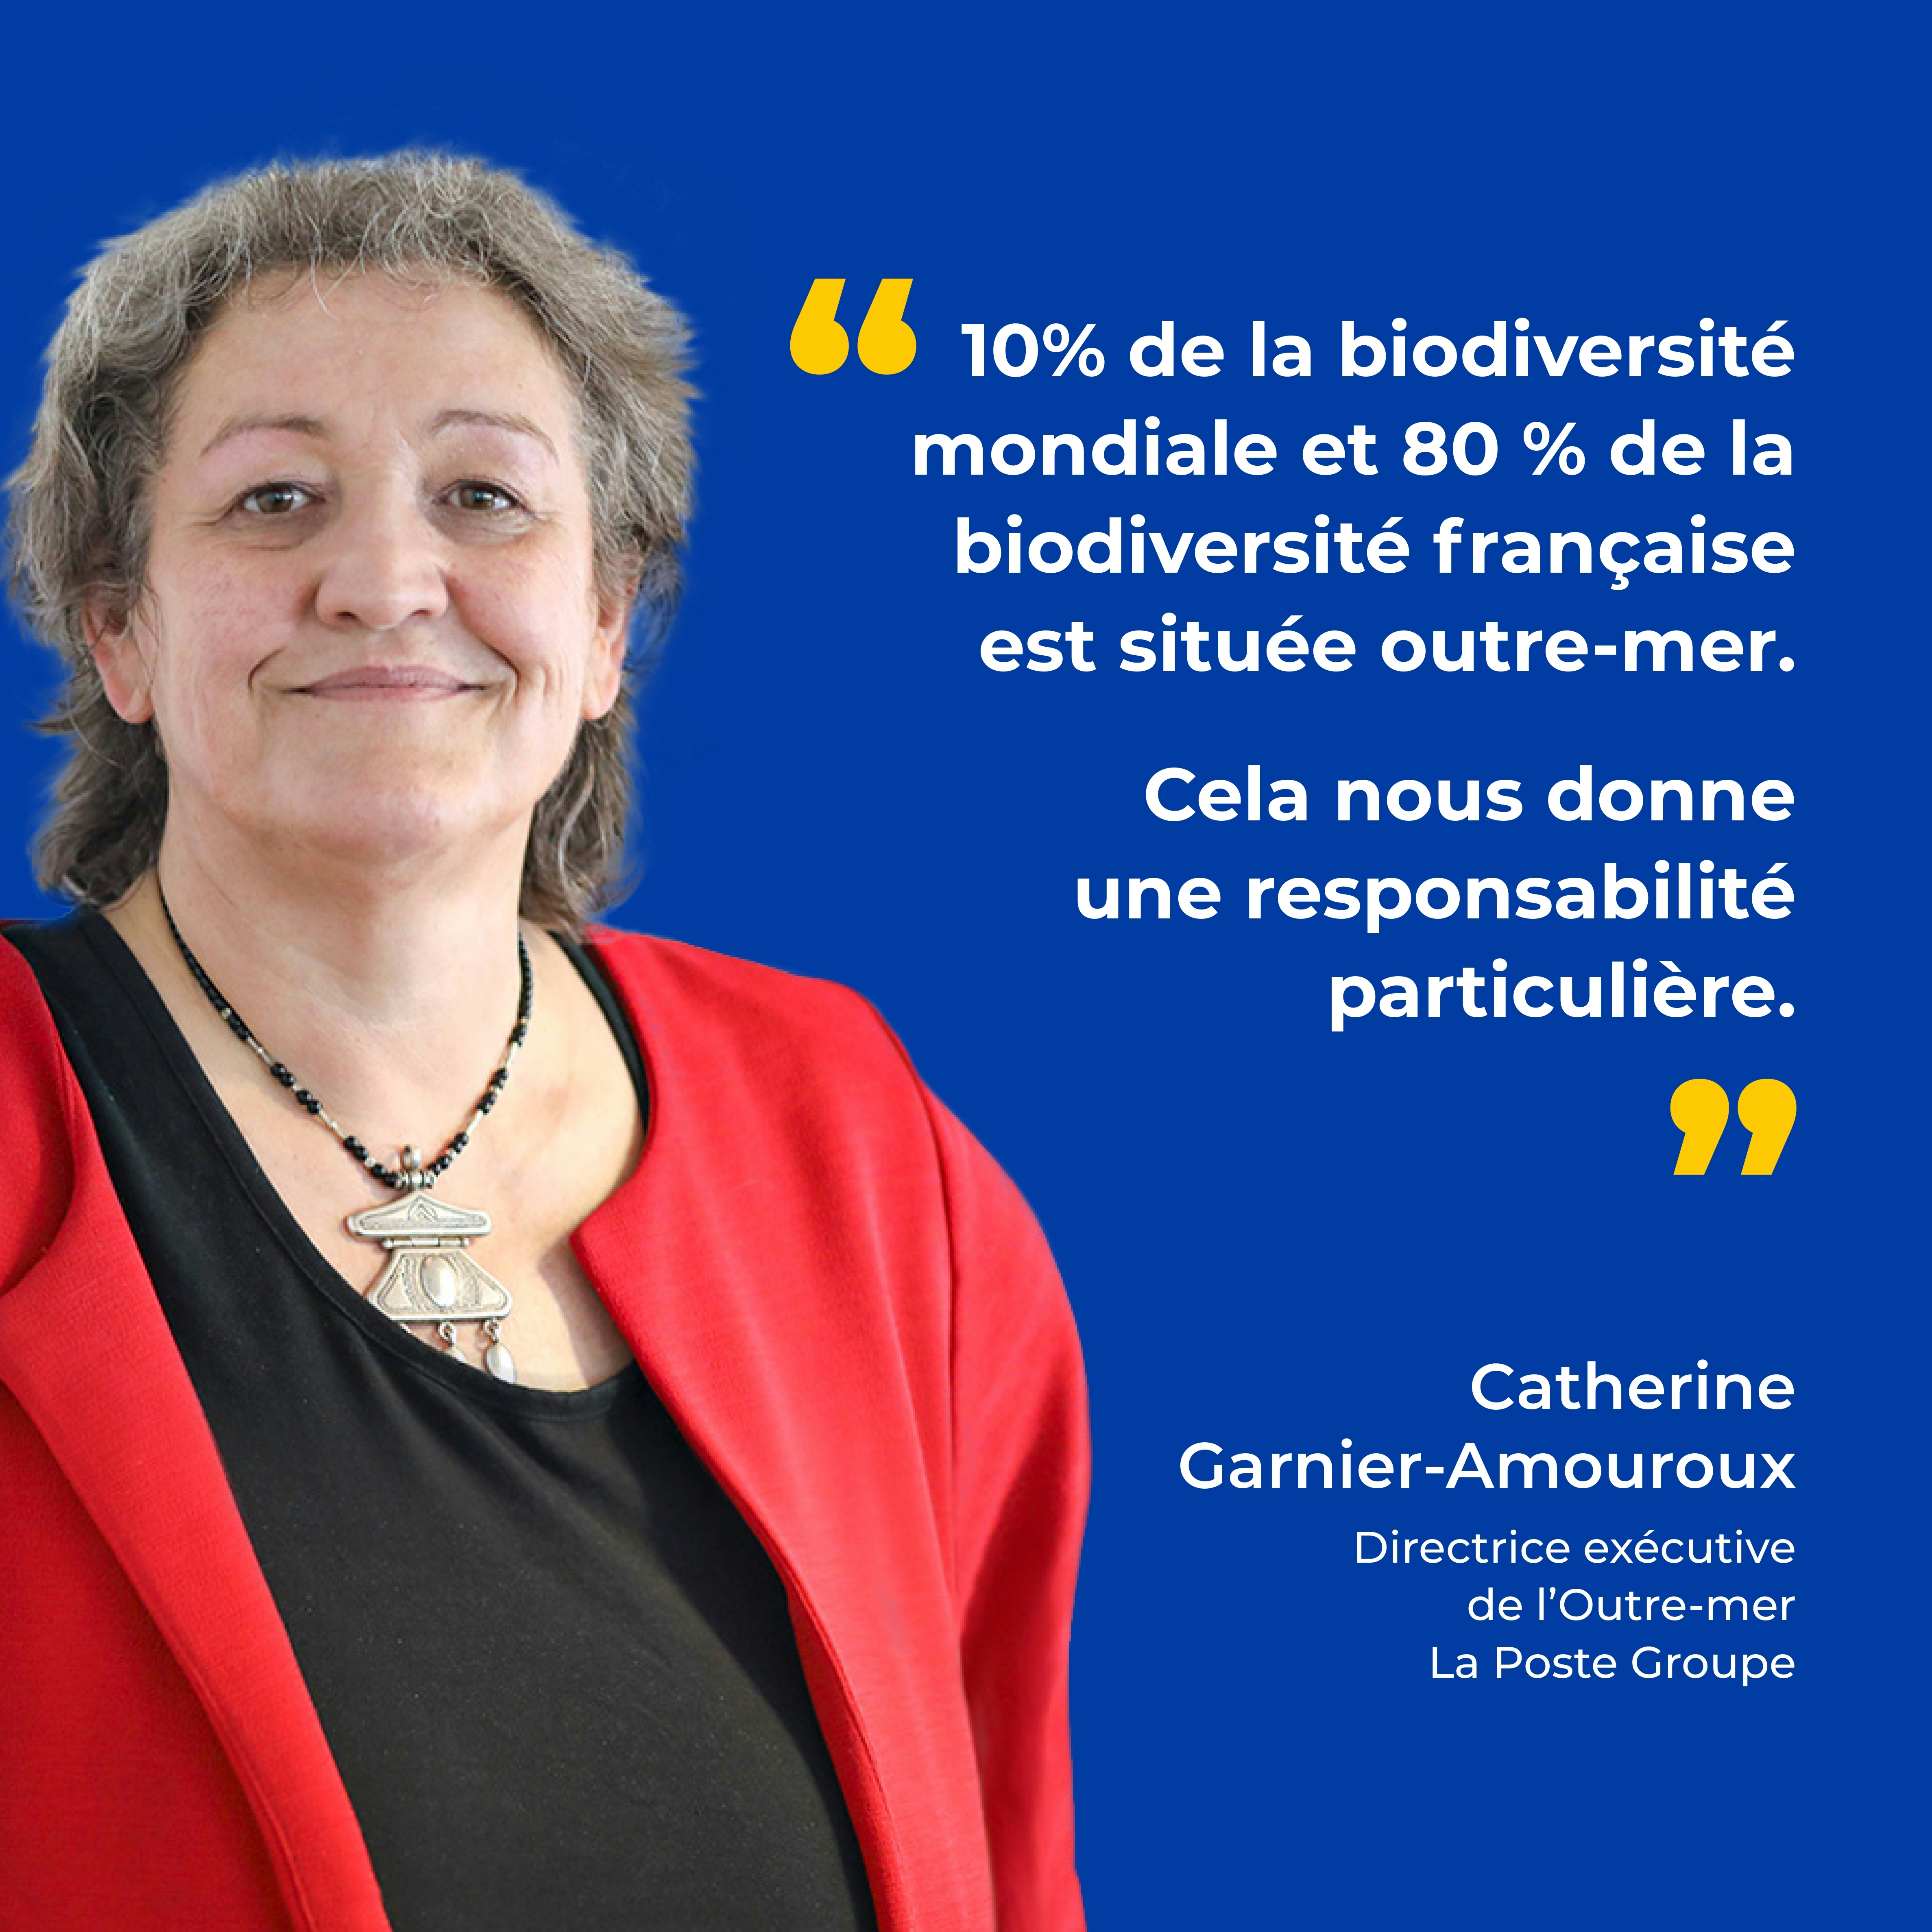 La biodiversité et l'Outre-mer - Photo de Catherine Garnier-Amouroux, Directrice exécutive de l'Outre-mer